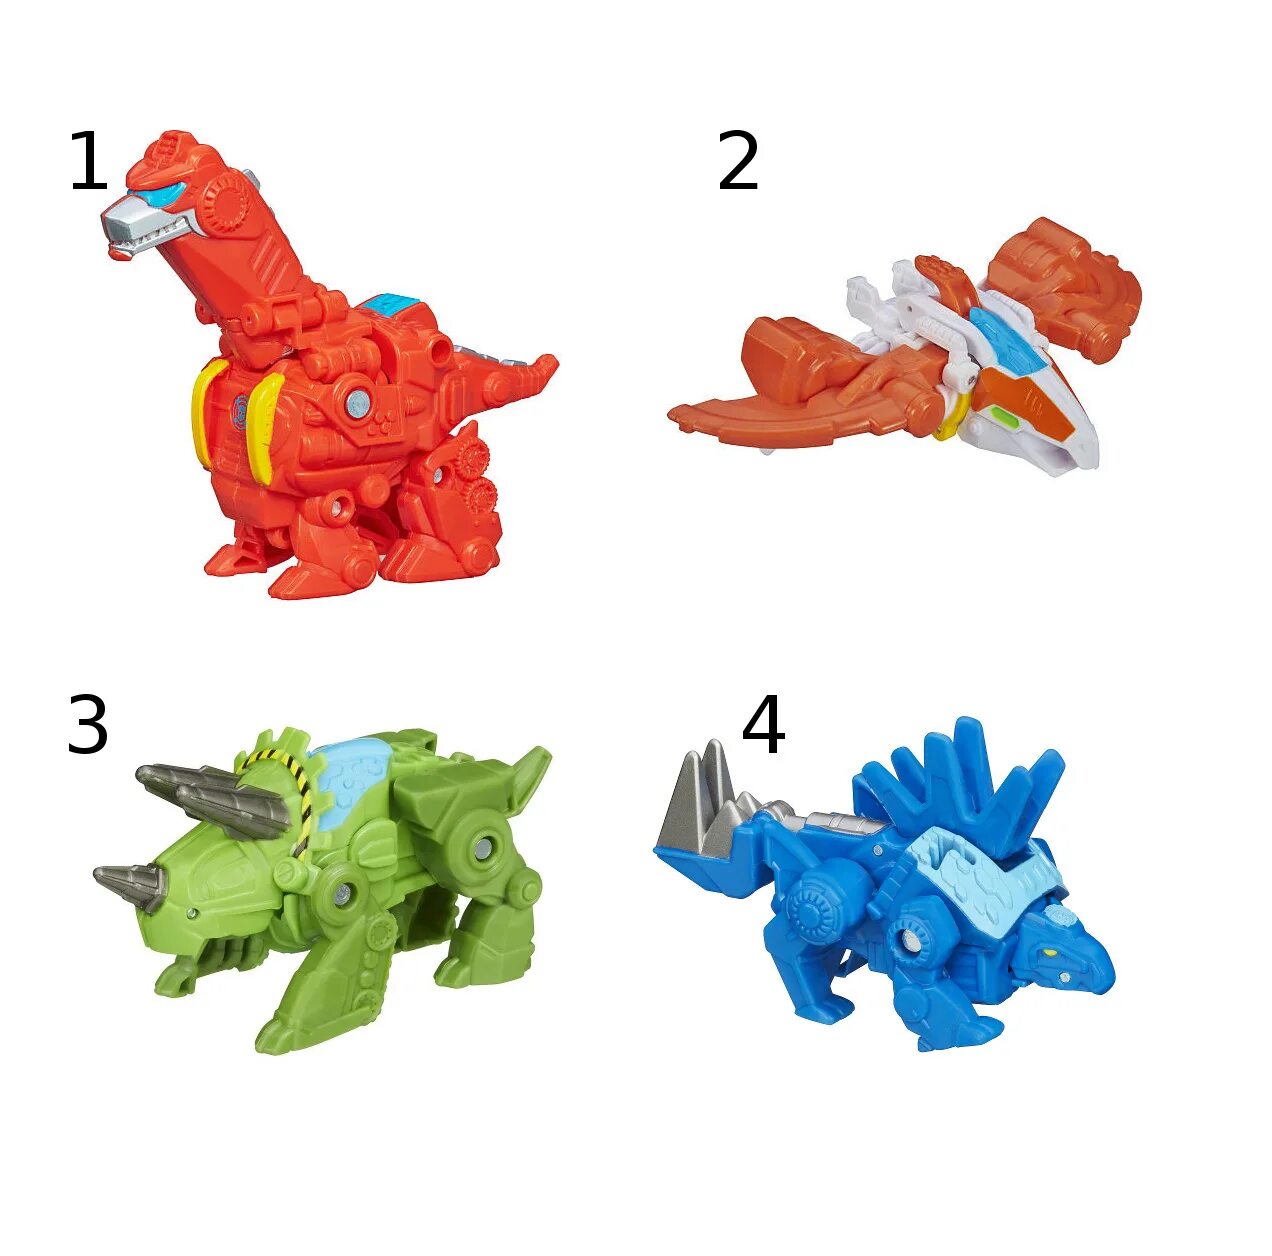 Динозавры спасатели. Трансформеры игрушки мини Диноботы. Игрушка-трансформер динозавр артикул 2110b. Трансформер динозавр Hasbro. Мини-трансформер Динобот-спасатель.